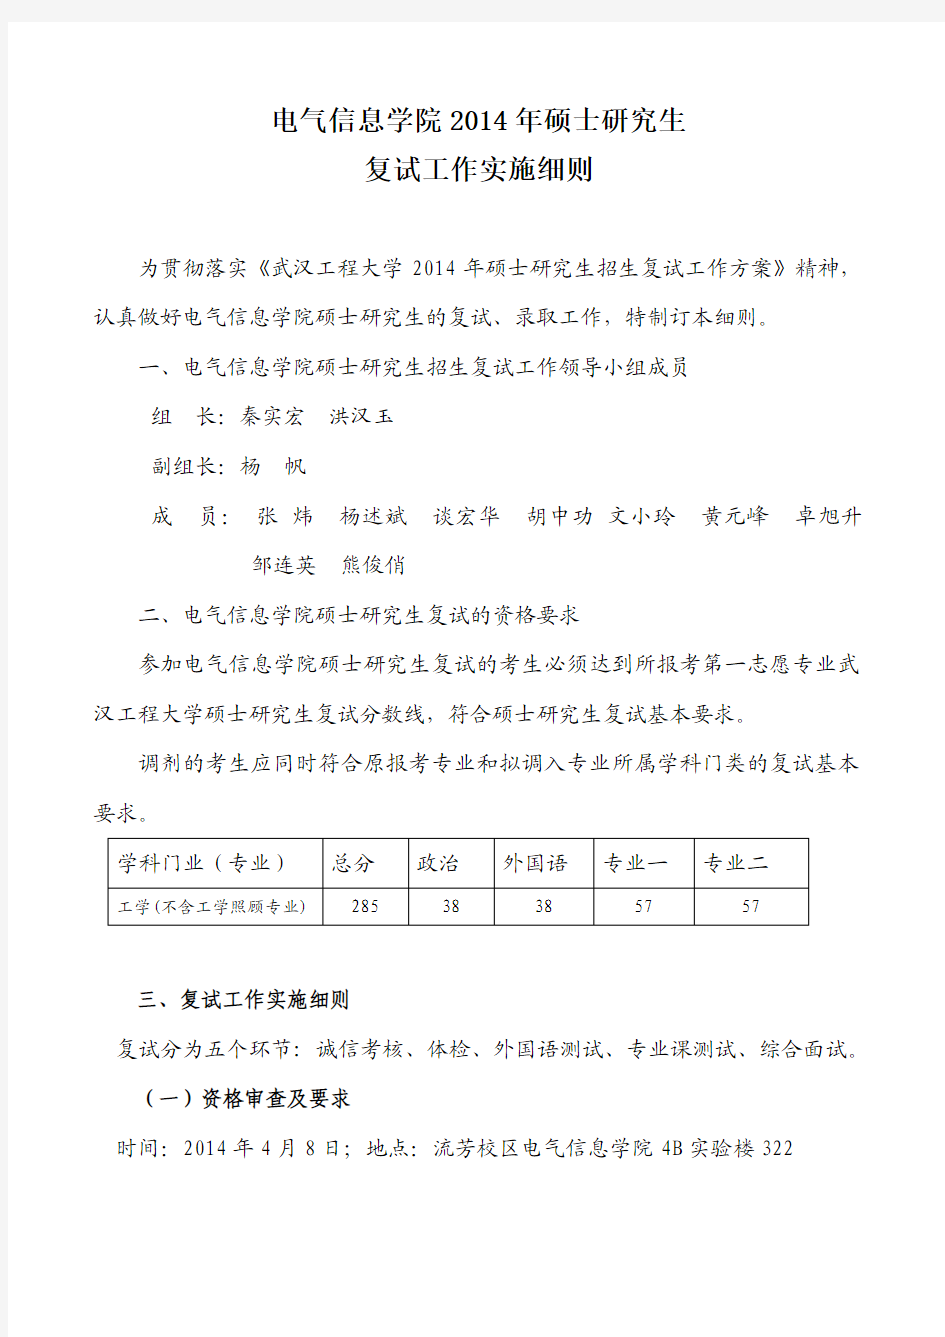 2014武汉工程大学年电气信息学院复试工作实施细则